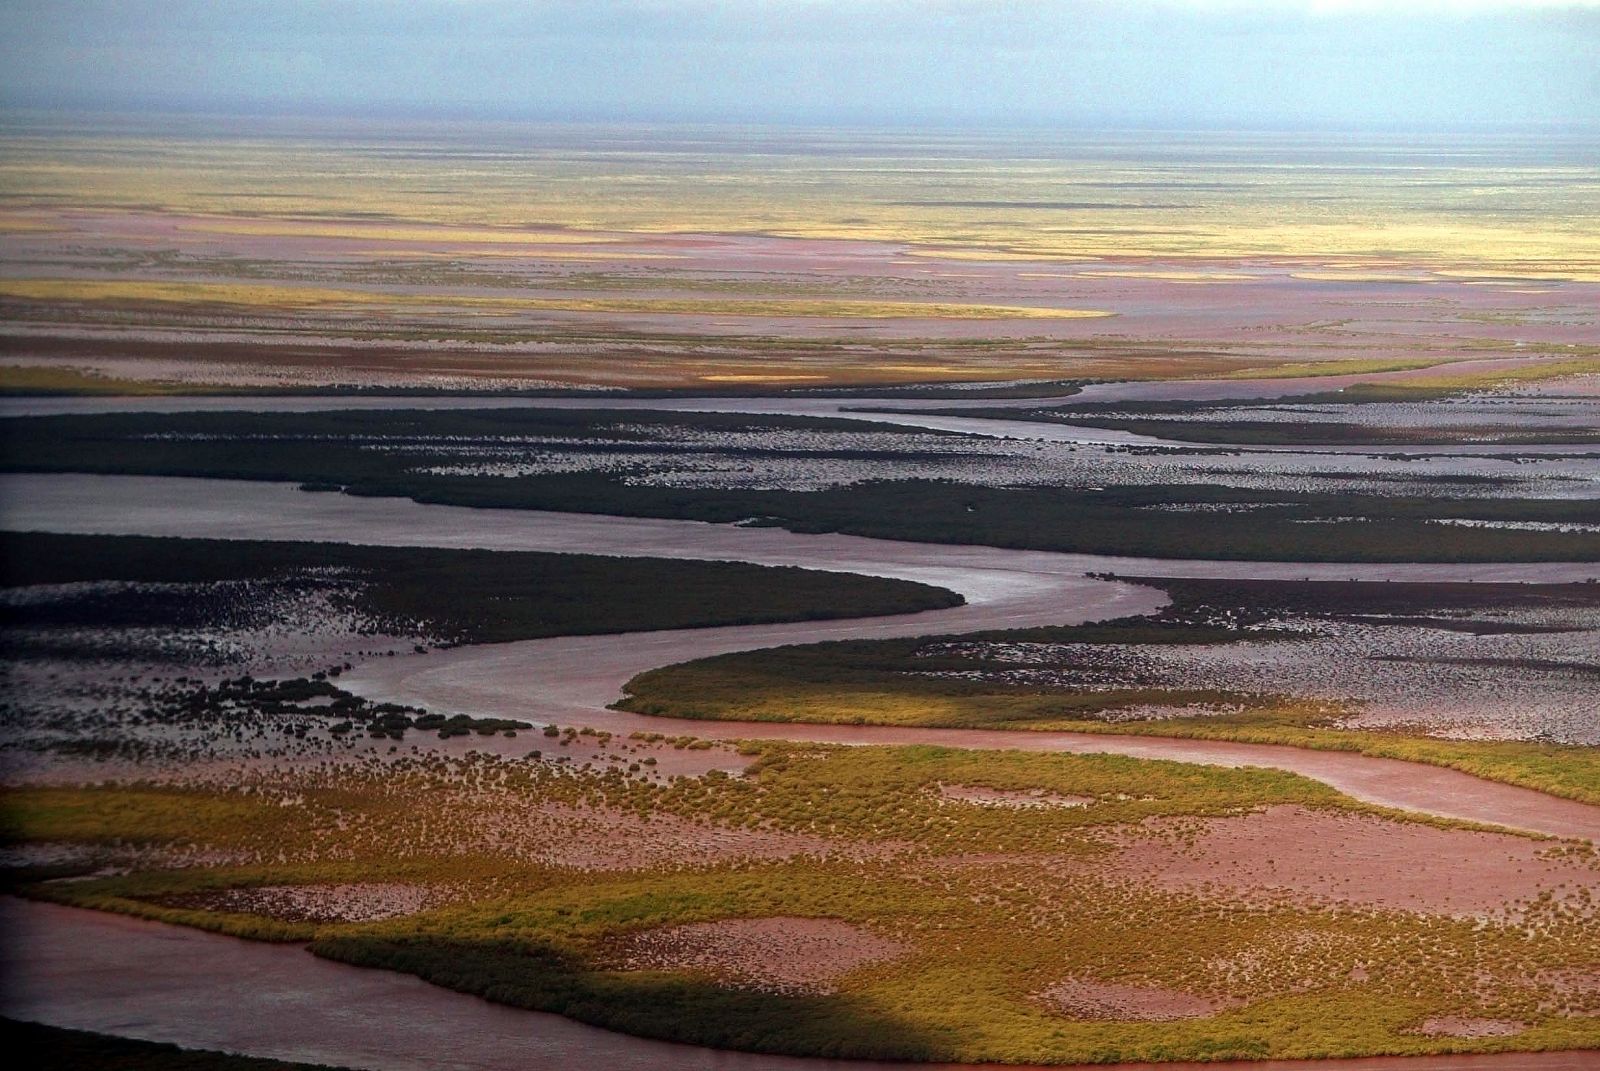 Imagen de la región de Pilbara, en Australia, donde se han hallado los indicios de vida.